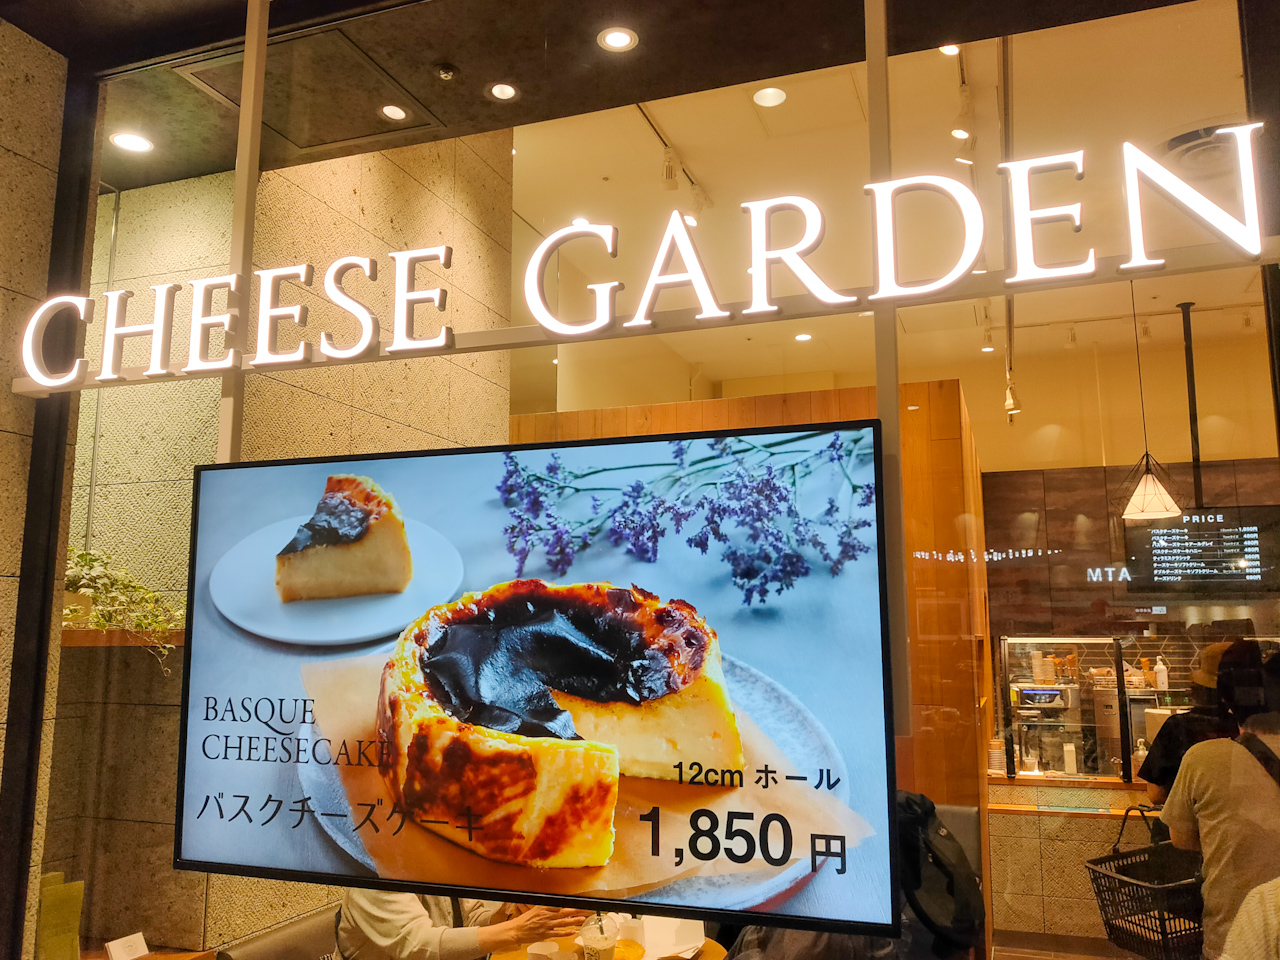 2021年6月25日「チーズガーデン」がコクーンシティ・コクーン2にオープン